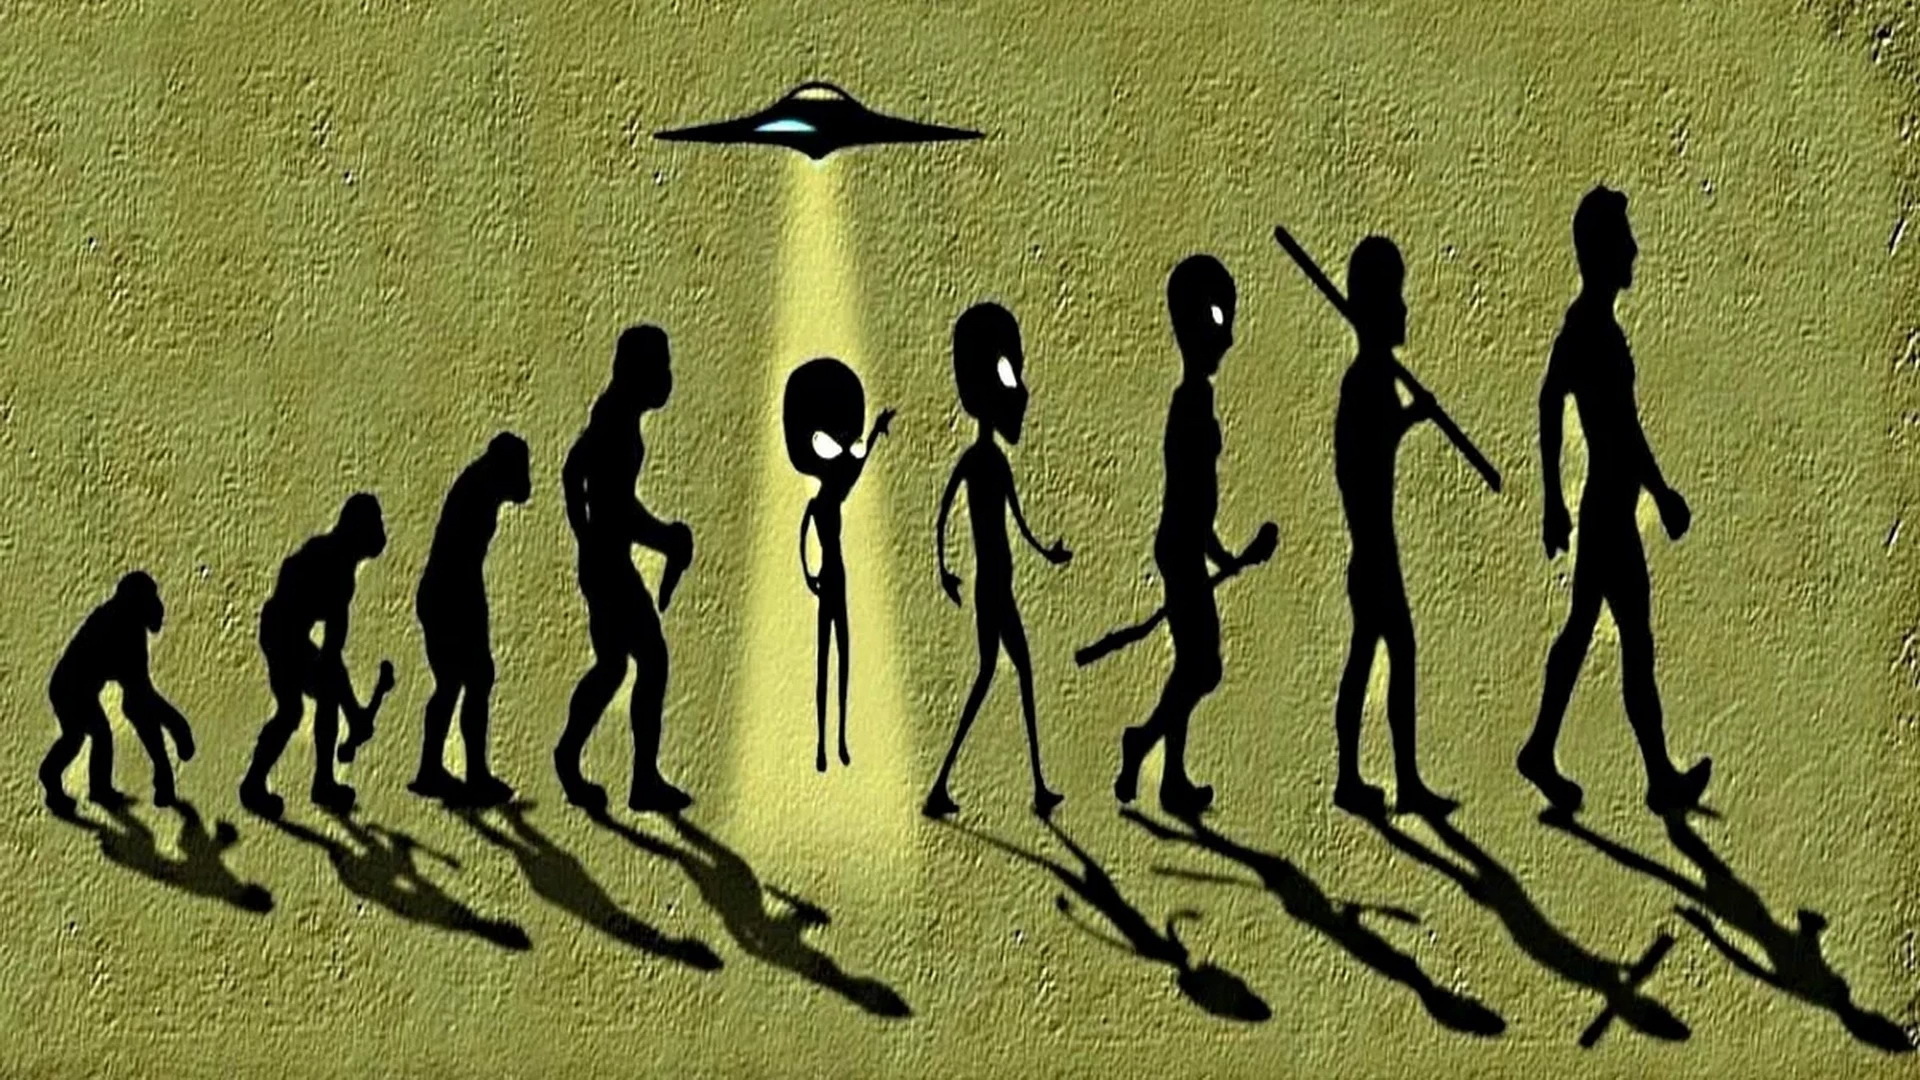 Human picture. Теория внешнего вмешательства (Палеовизит).. Происхождение человека. Инопланетная теория происхождения человека. Эволюция инопланетян.